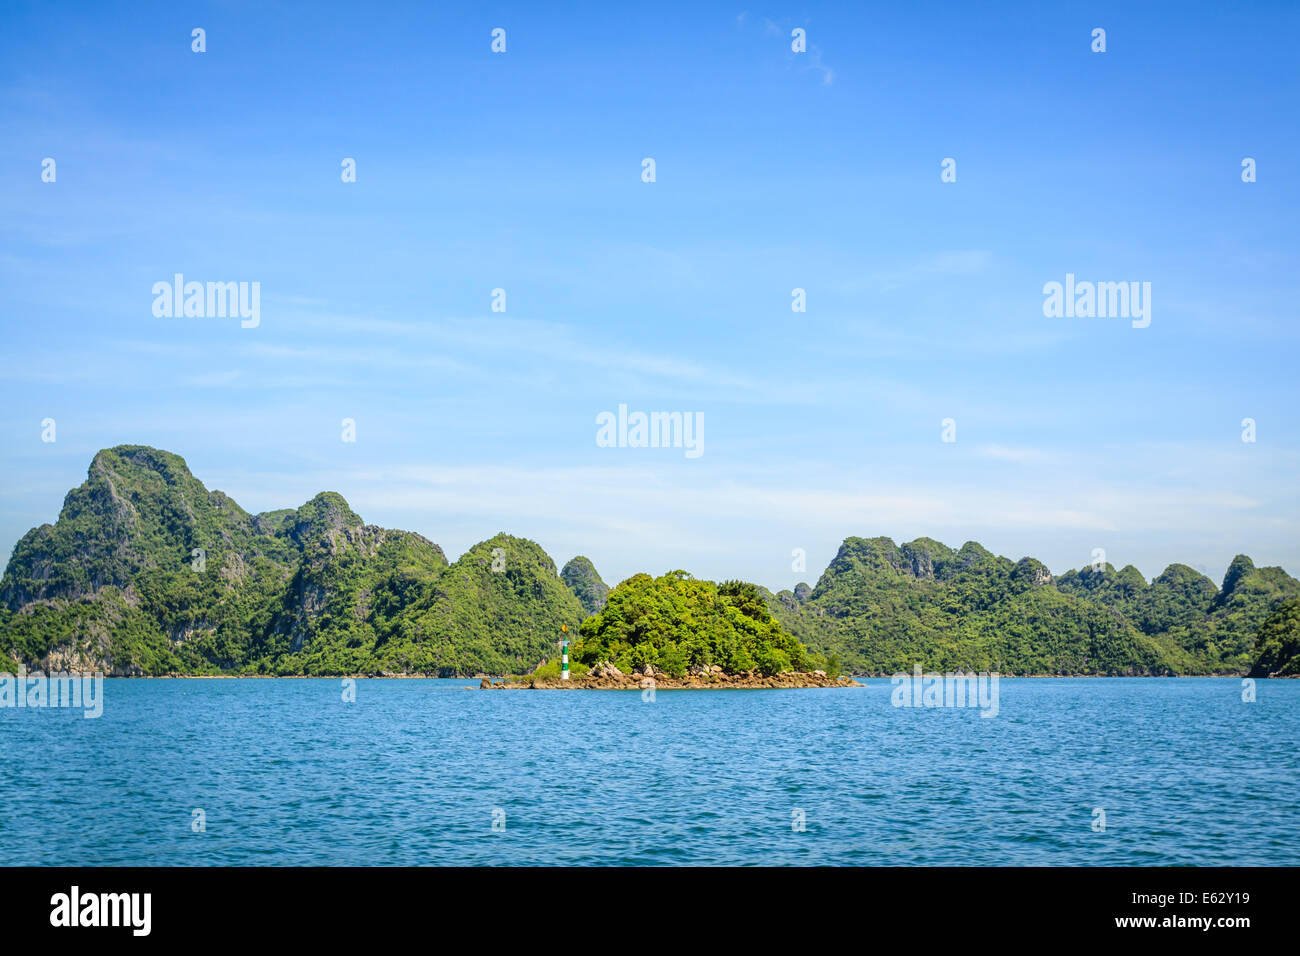 Ha long bay at Quang Ninh province, Vietnam Stock Photo